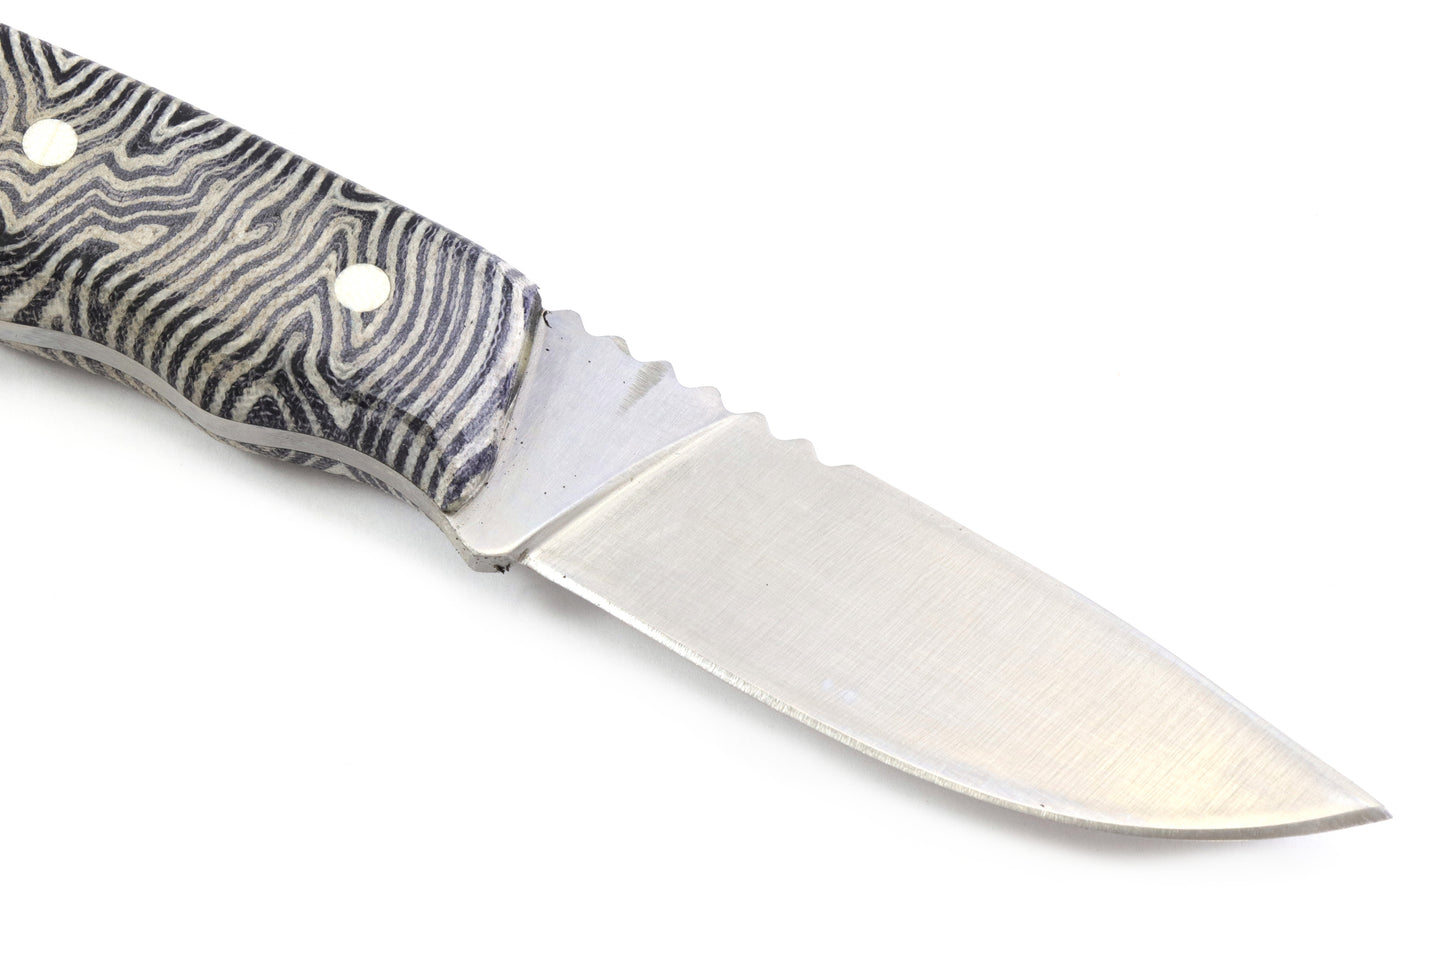 Hunting Skinner Knife